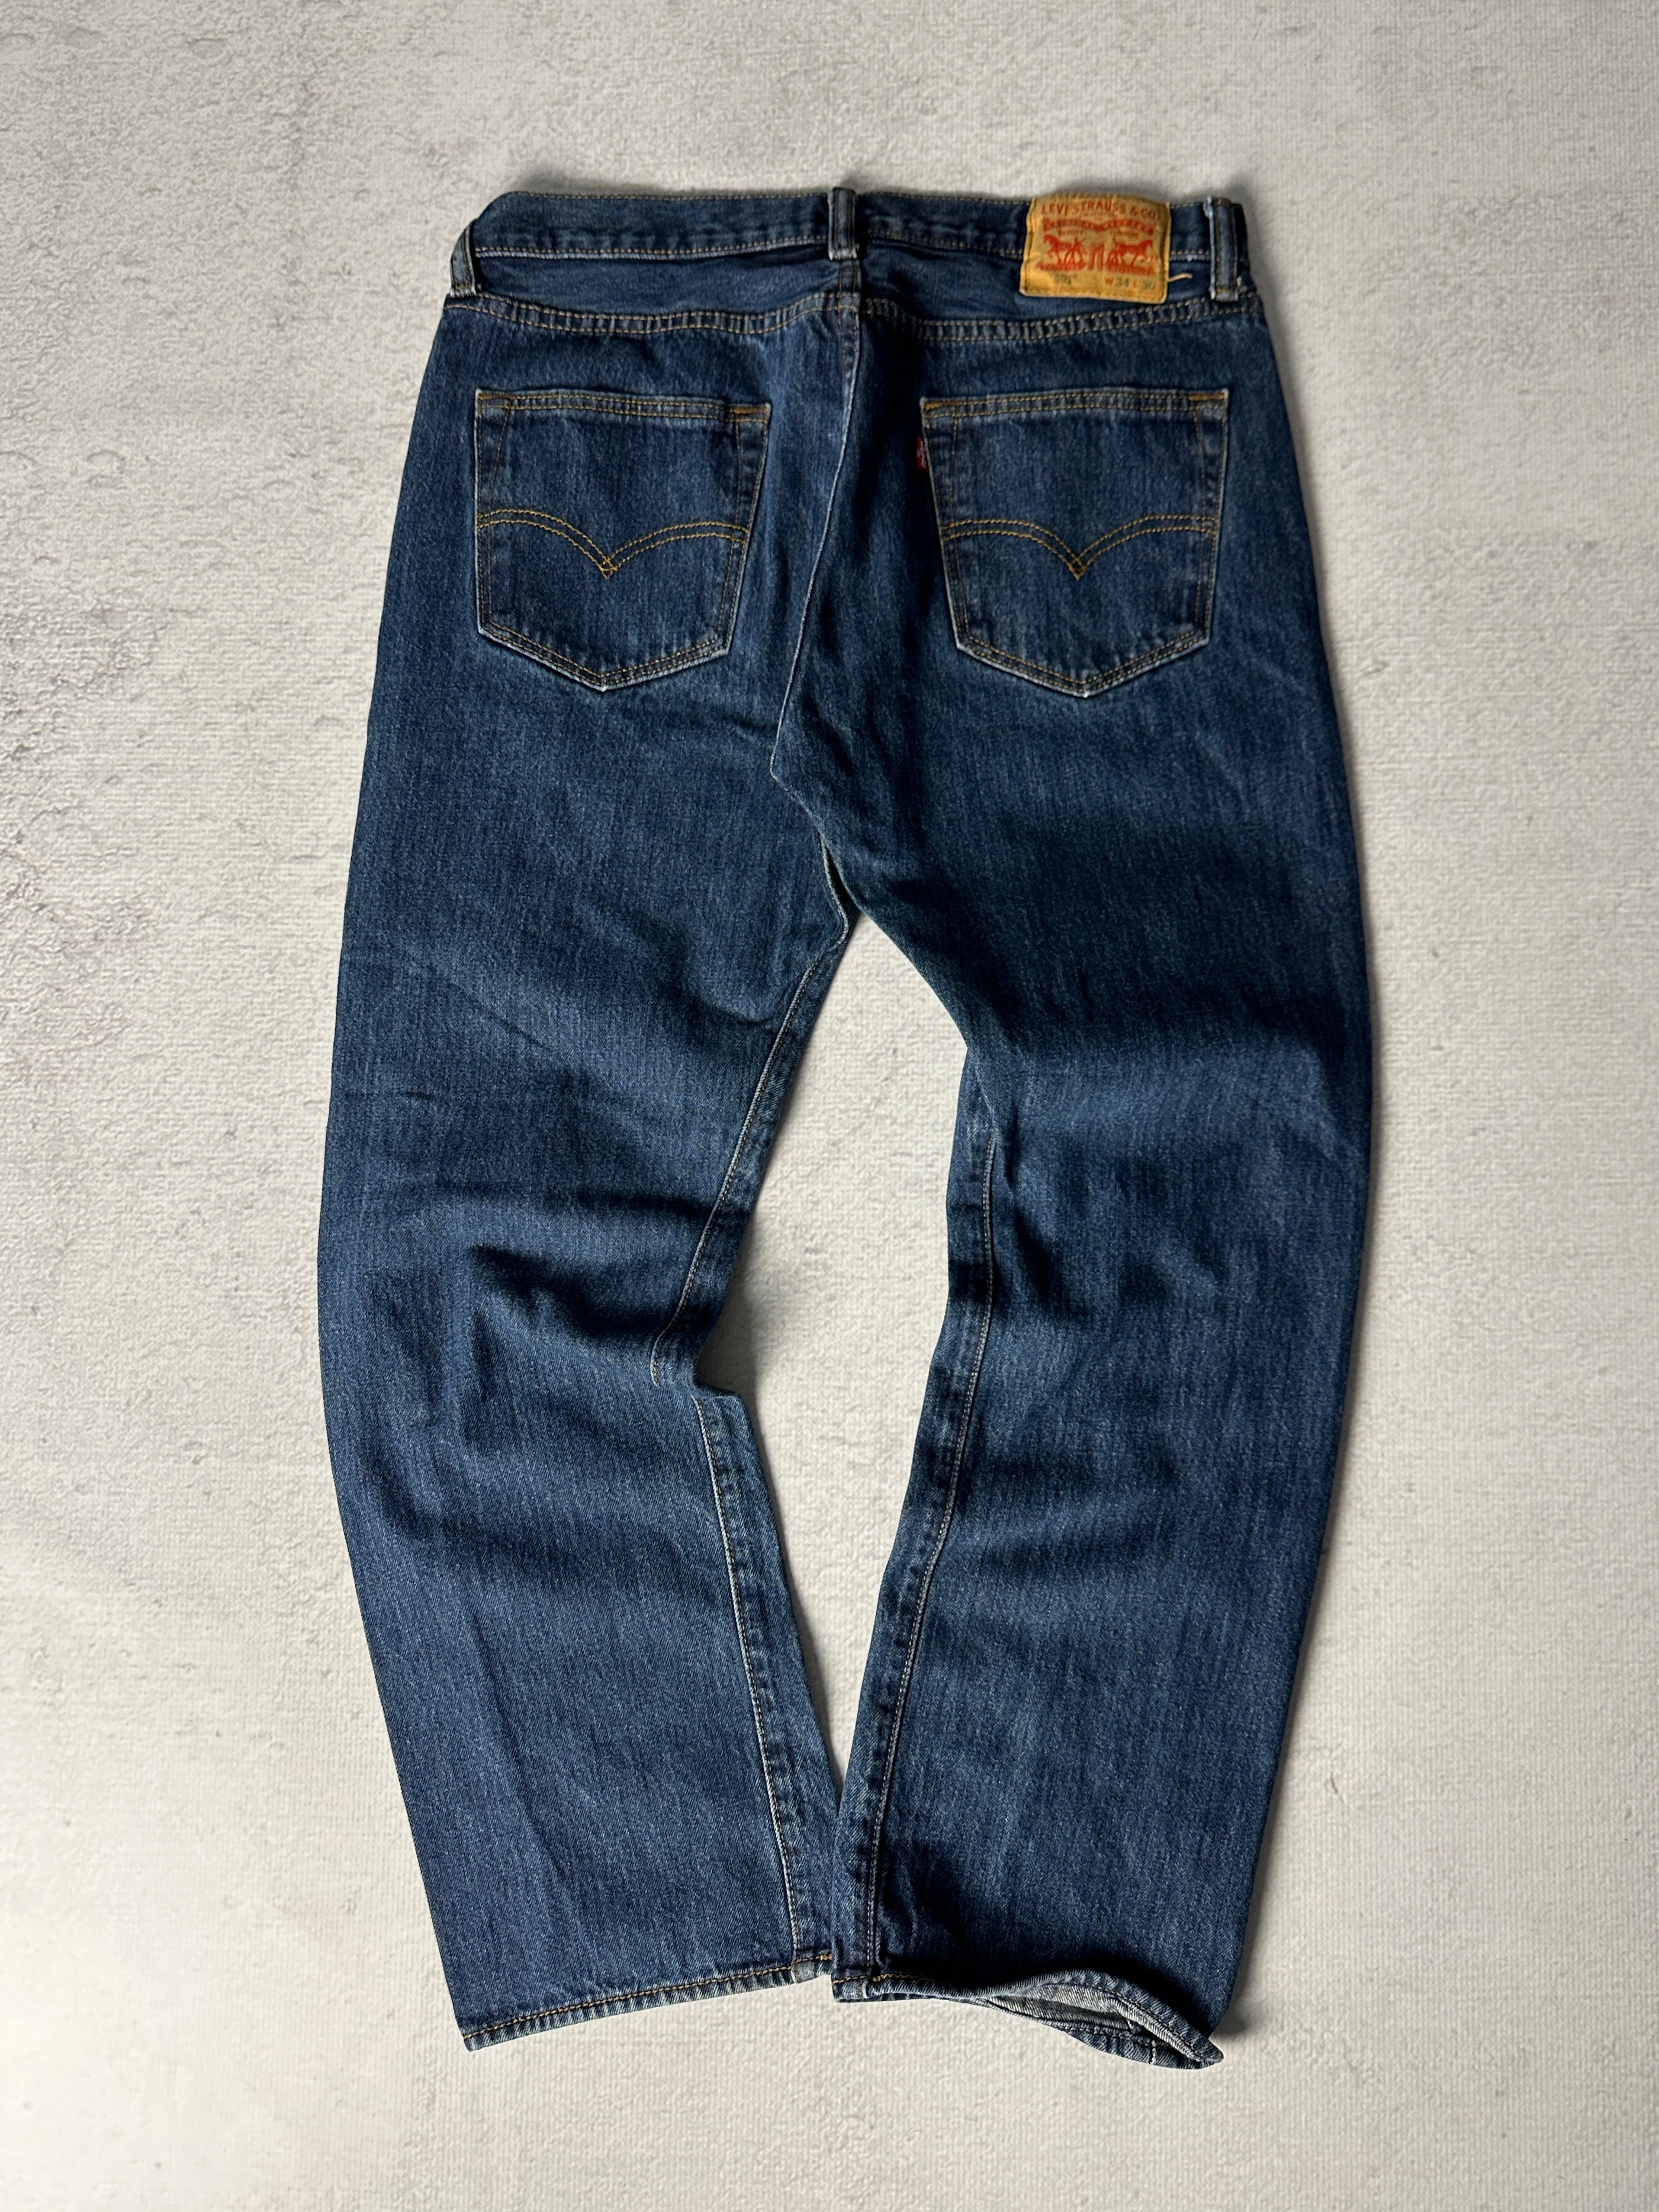 Vintage Levis 501 Jeans - Men's 34W30L